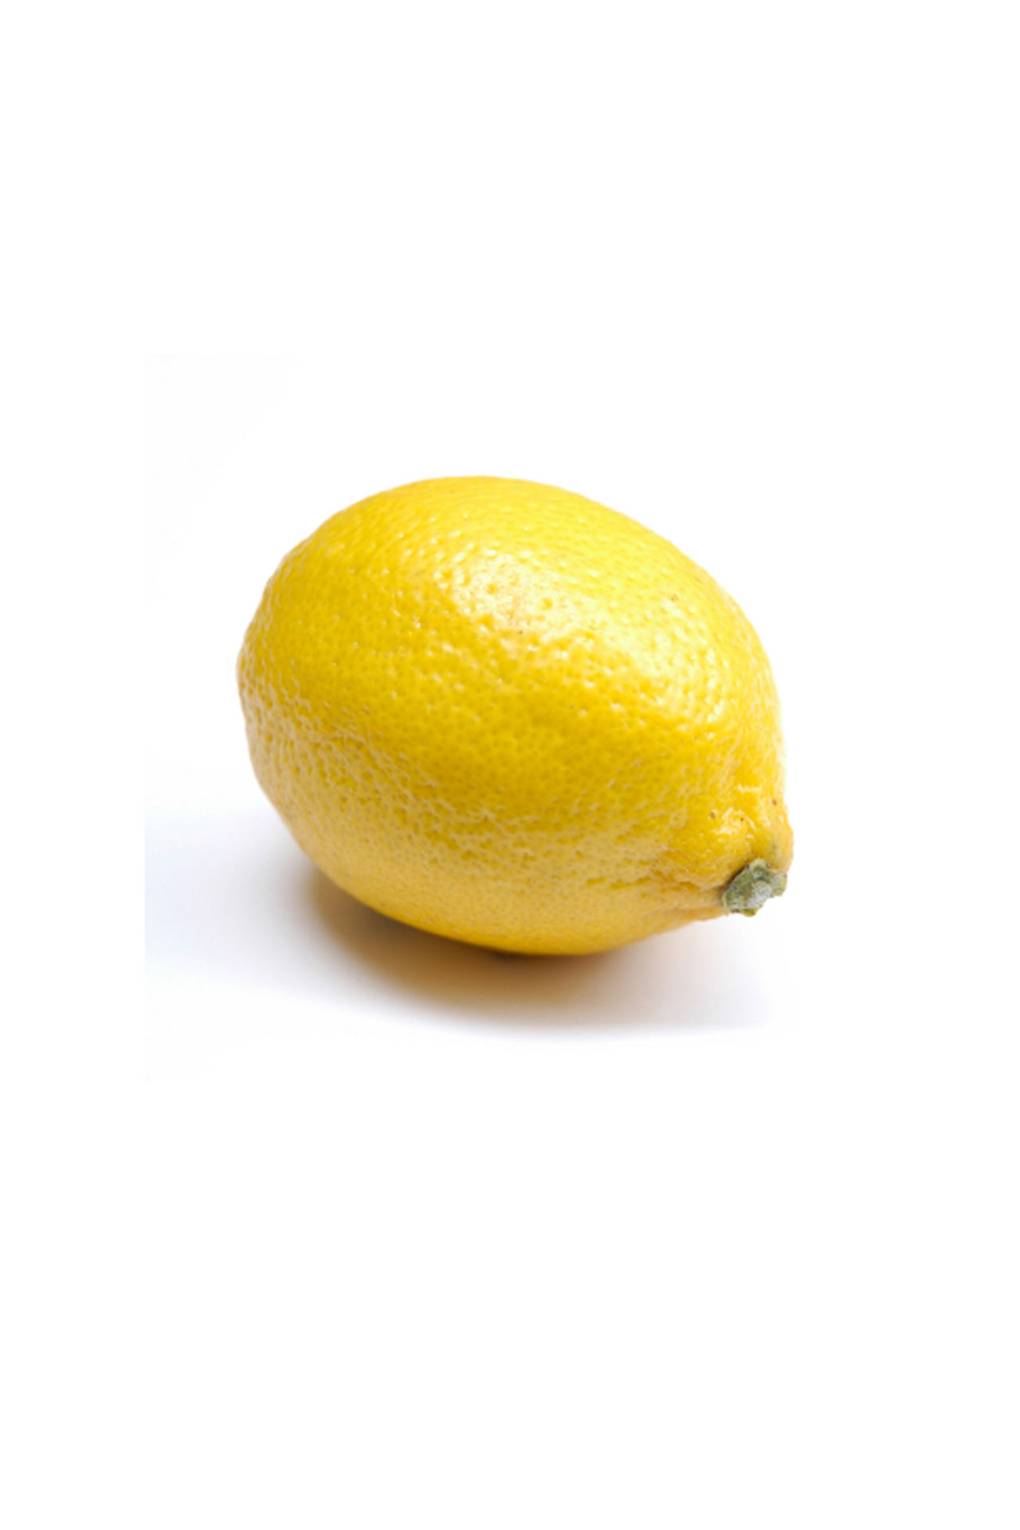 Le citron comme aliment contre la cellulite